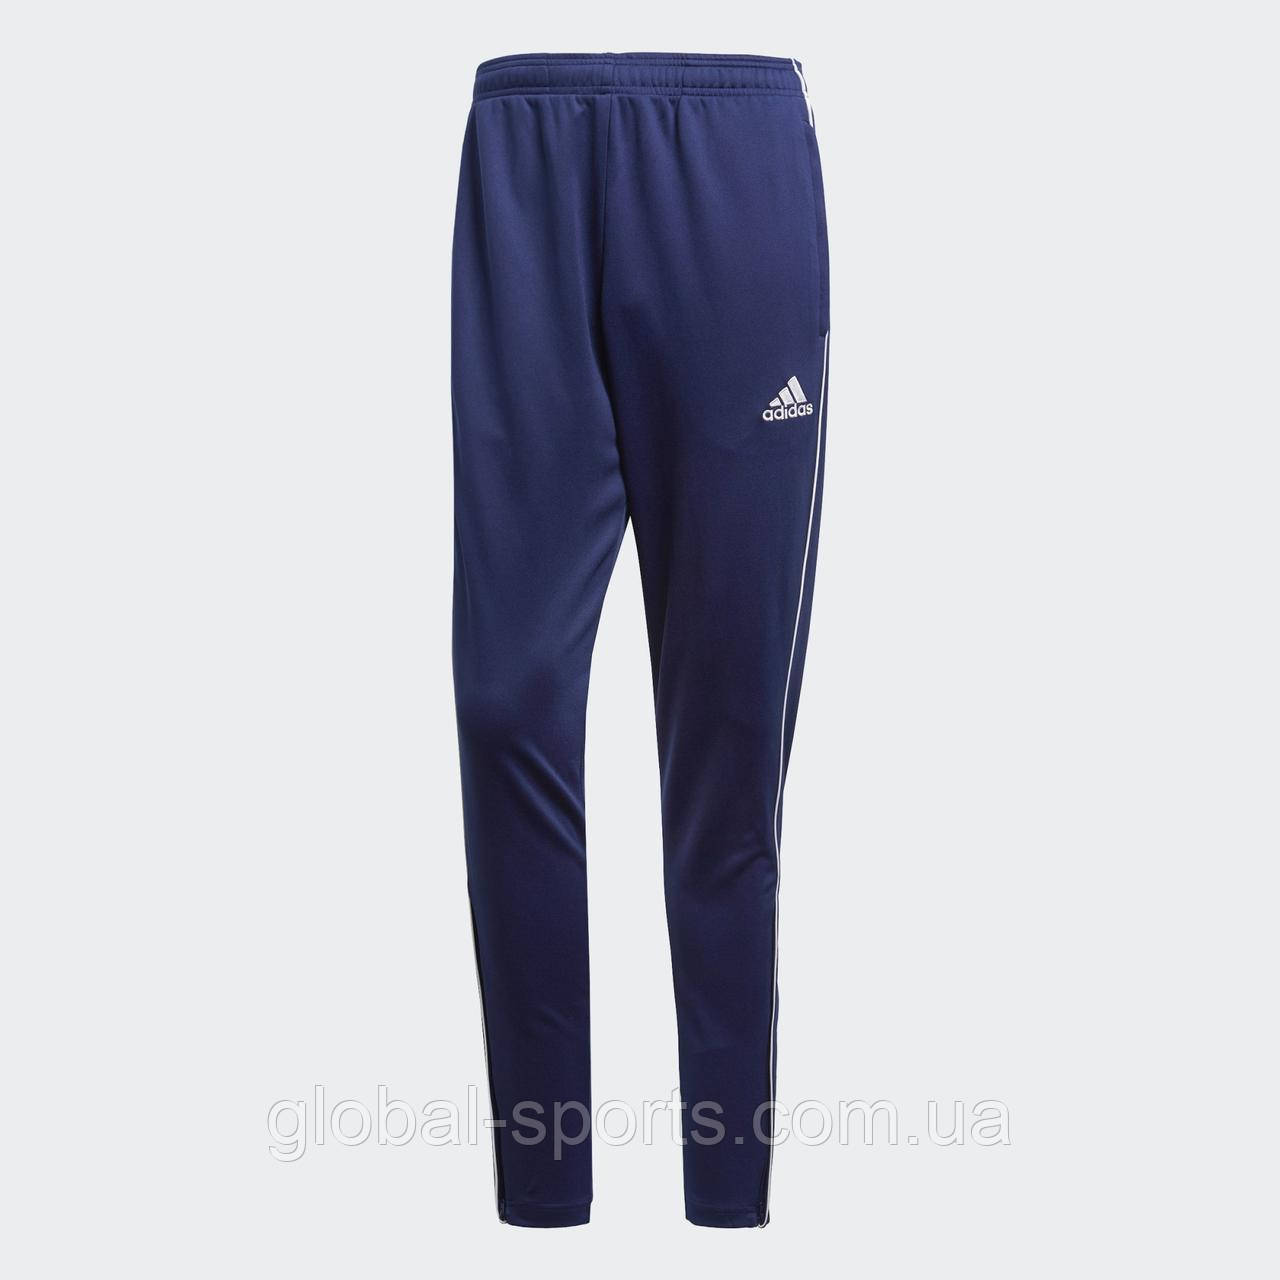 Чоловічі штани тренувальні Adidas Core 18 (Артикул: CV3988) XS і S